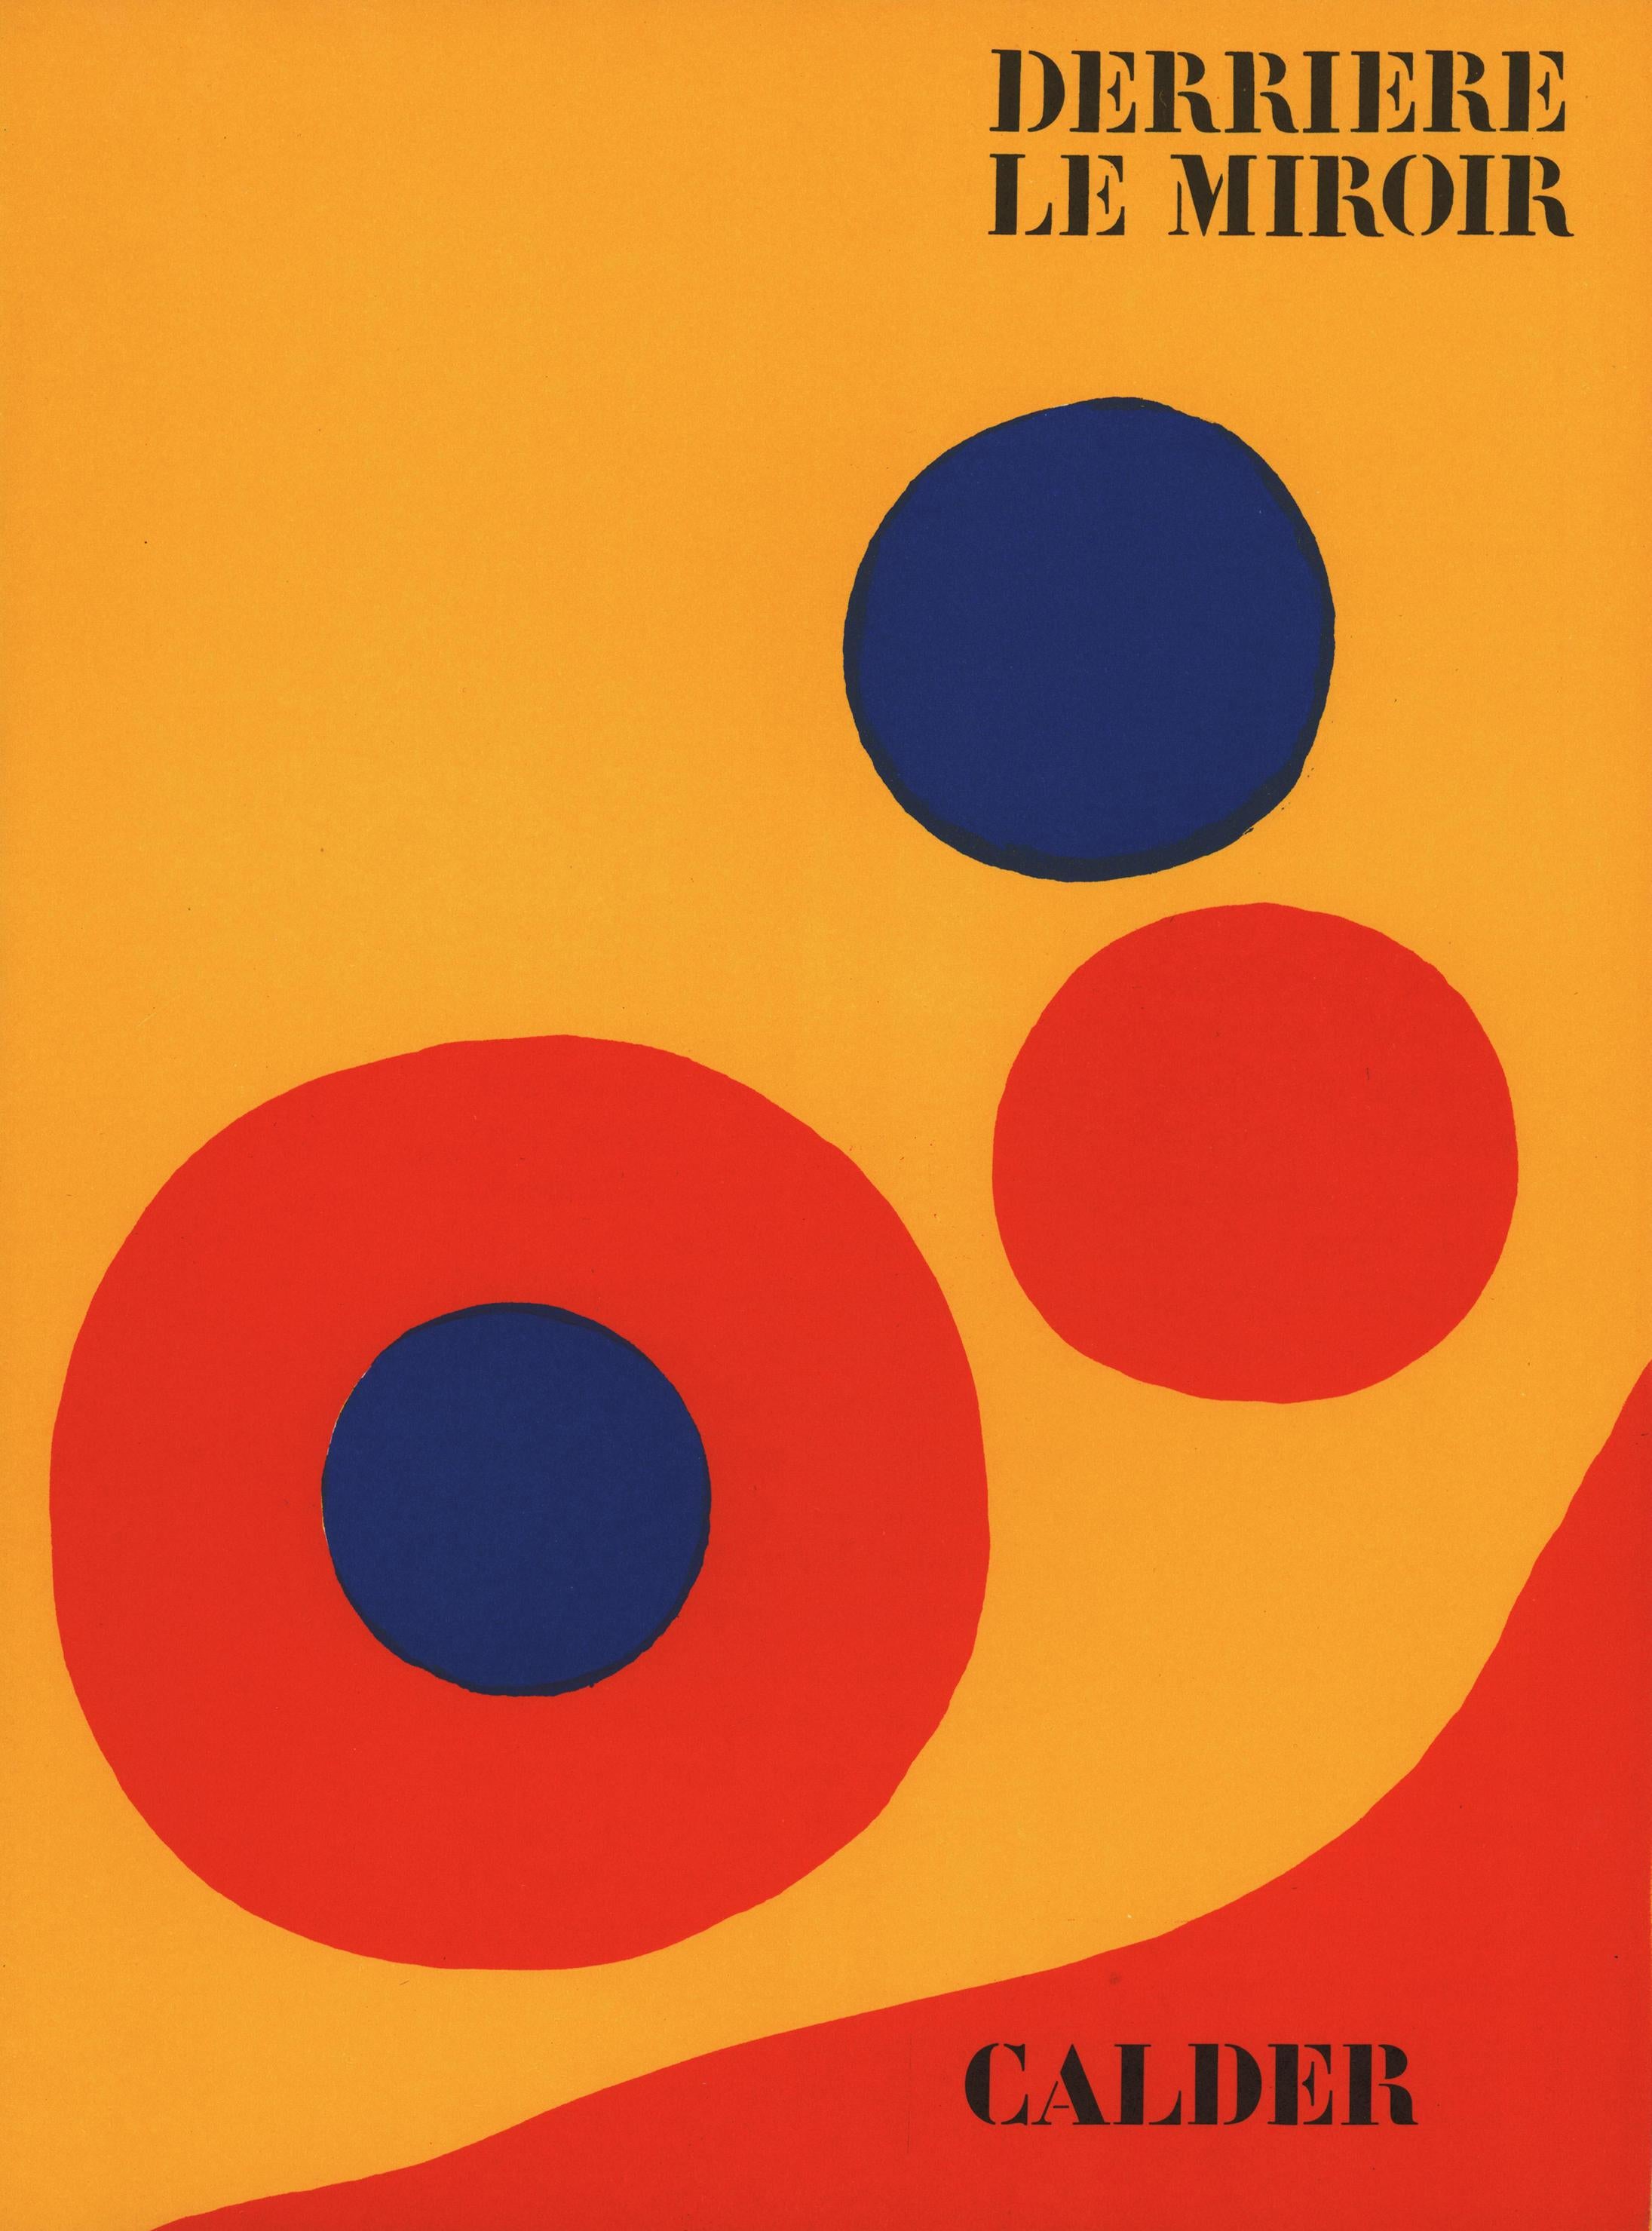 Alexander Calder Couverture lithographique : Derrière le miroir 1973 :

Feuille de couverture lithographique ; 15 x 11 pouces.
Très bon état général vintage.
Non signé d'une édition d'inconnus.
Portefeuille : Derrière le miroir, 1973.
Superbe mat et